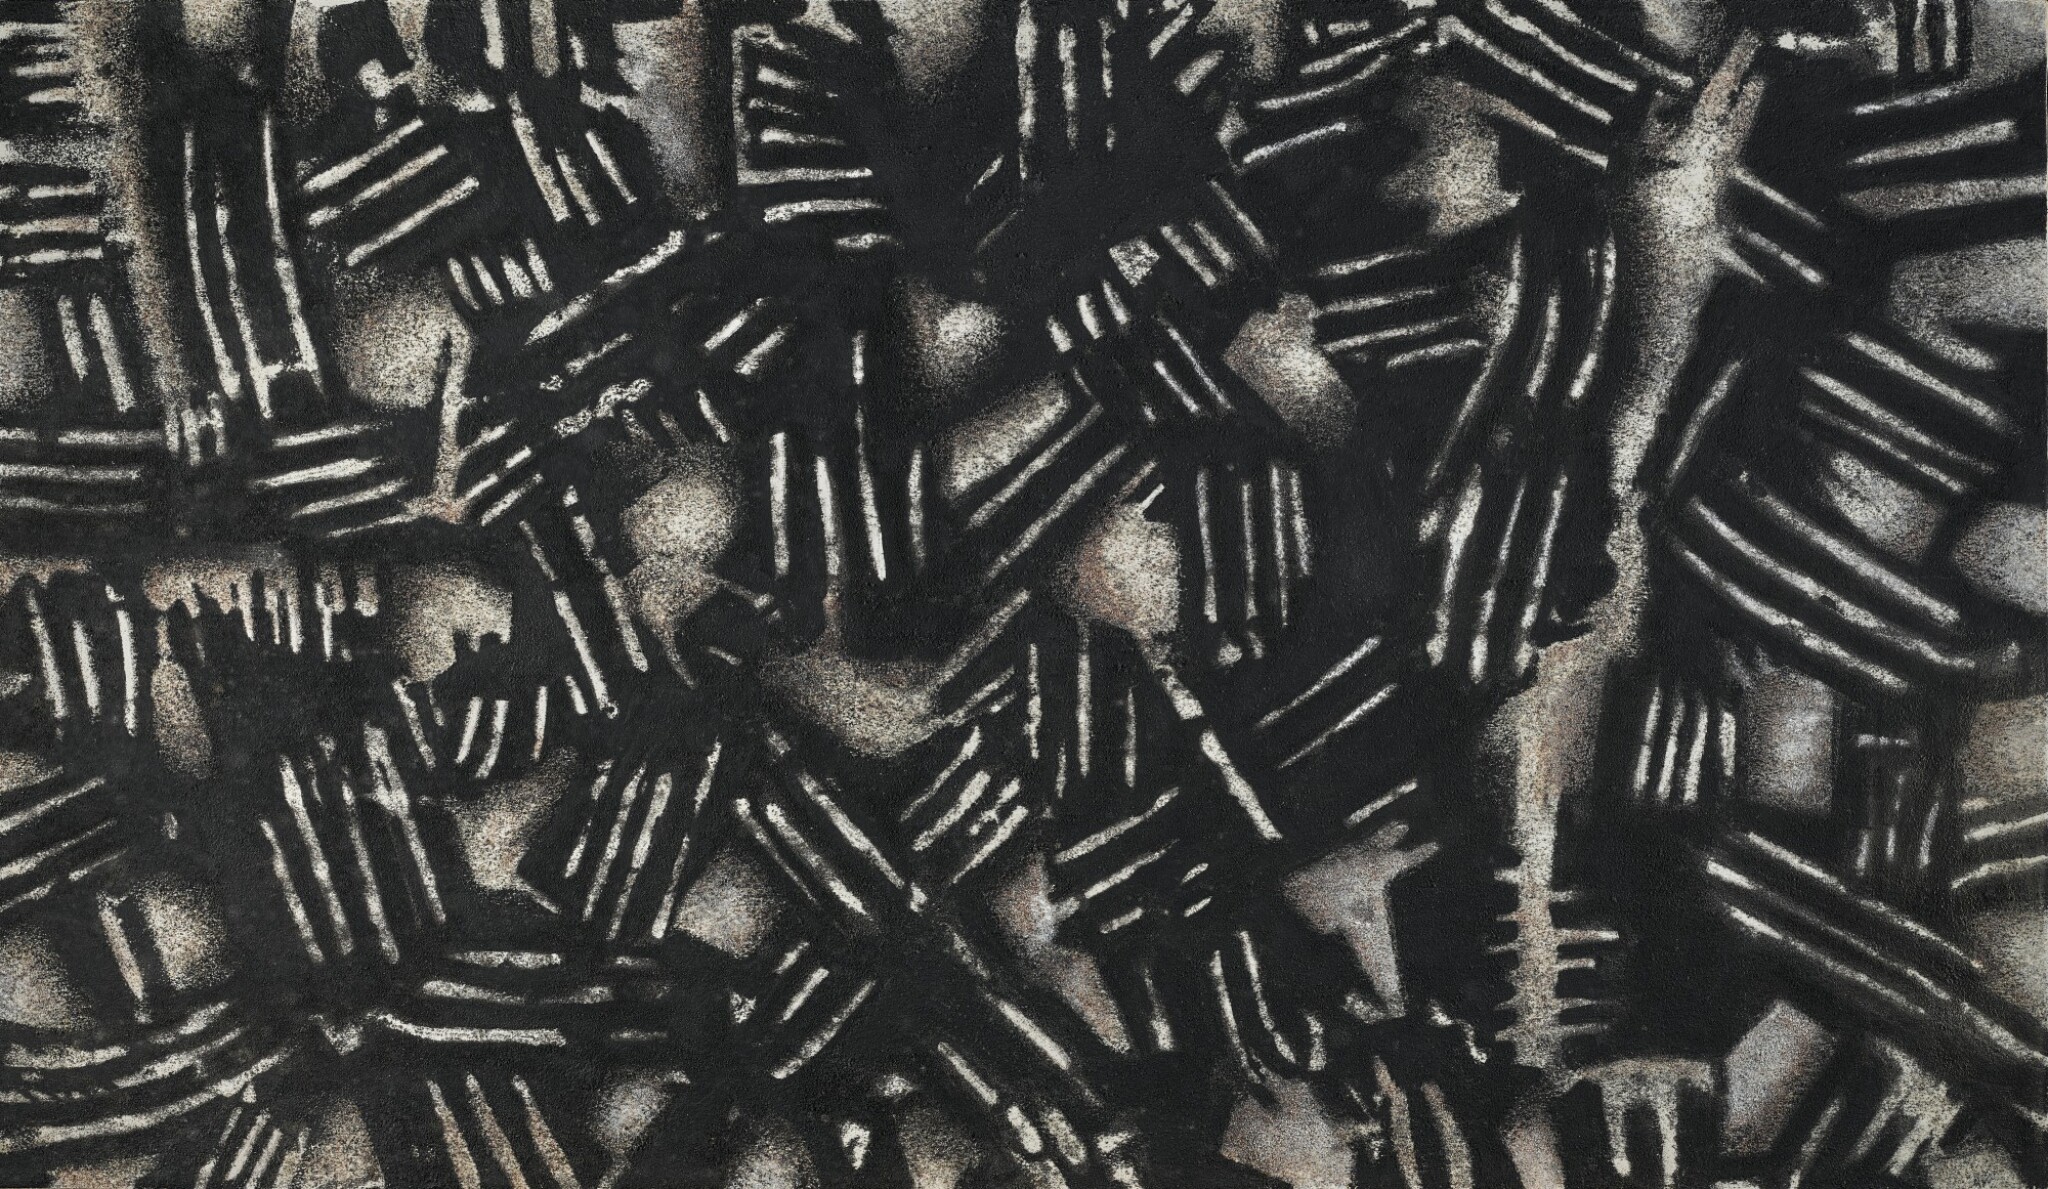 بدون عنوان (ترکیب بندی)، 1341. محسن وزیری مقدم. شن سیاه بر روی بوم. فروخته شده در هنر قرن بیستم خاورمیانه ساتبیز، 91/3 هزار دلار.